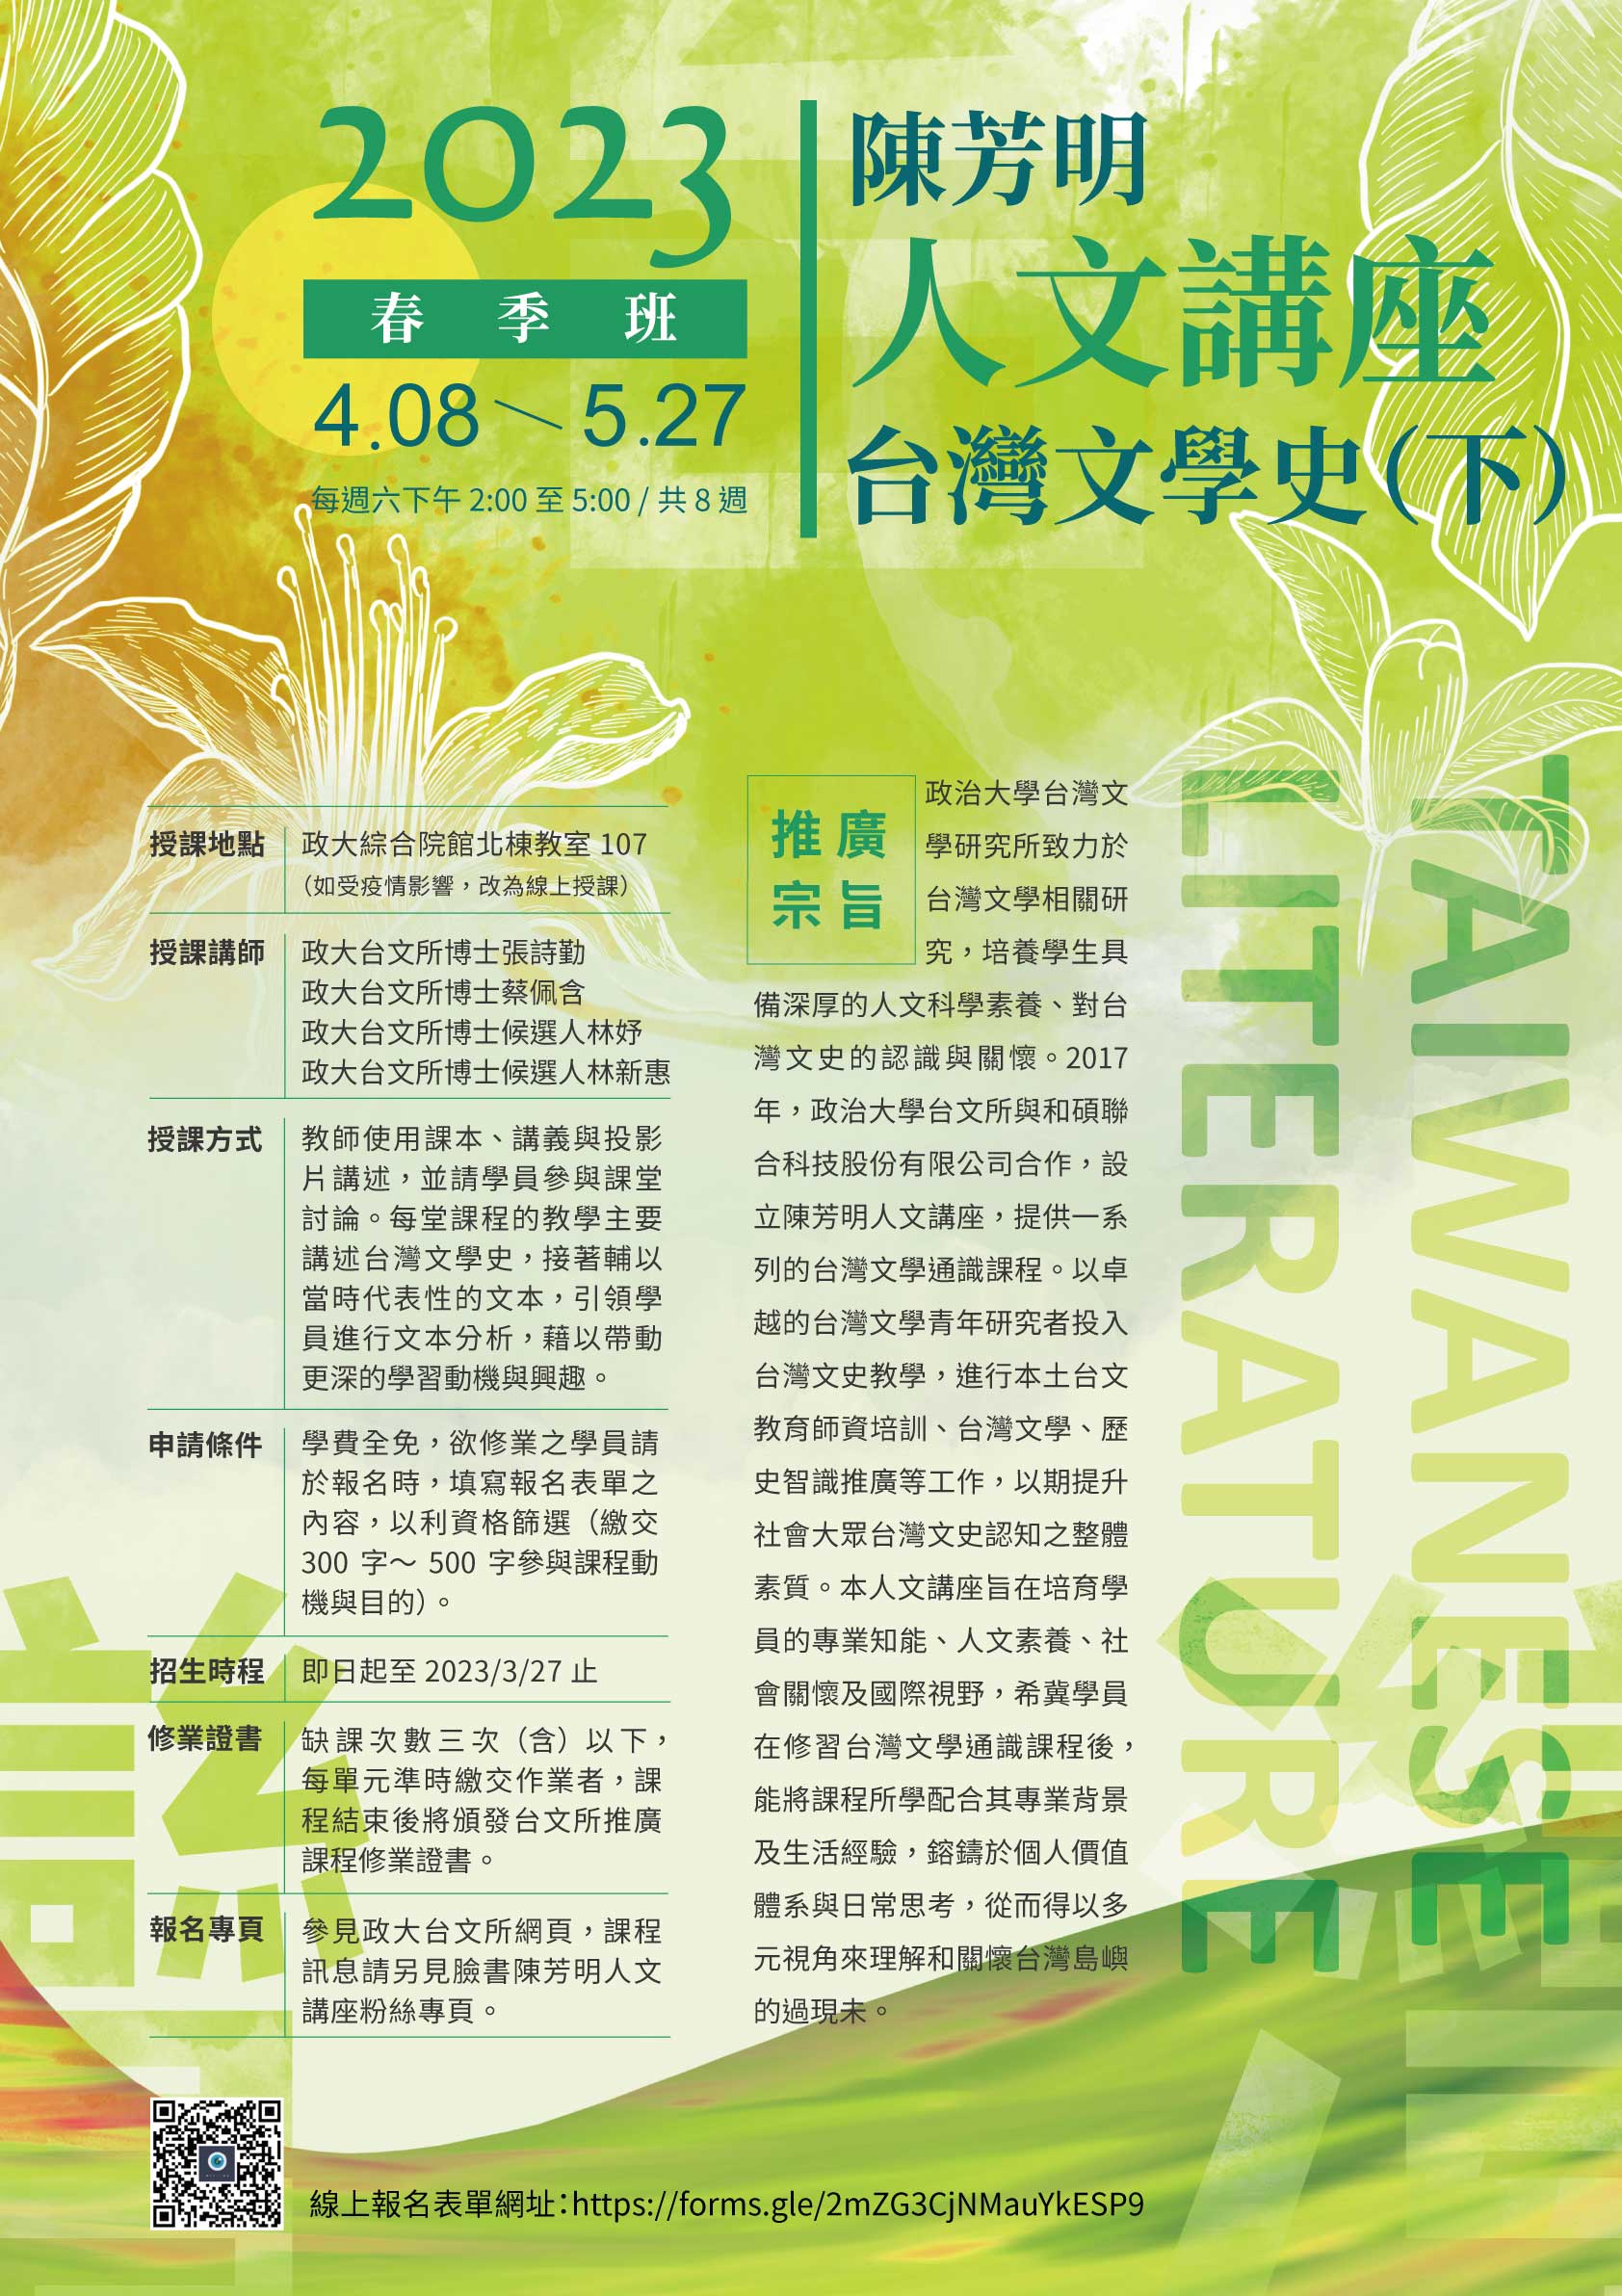 【陳芳明人文講座】「台灣文學史（下）」課程即日起開放報名